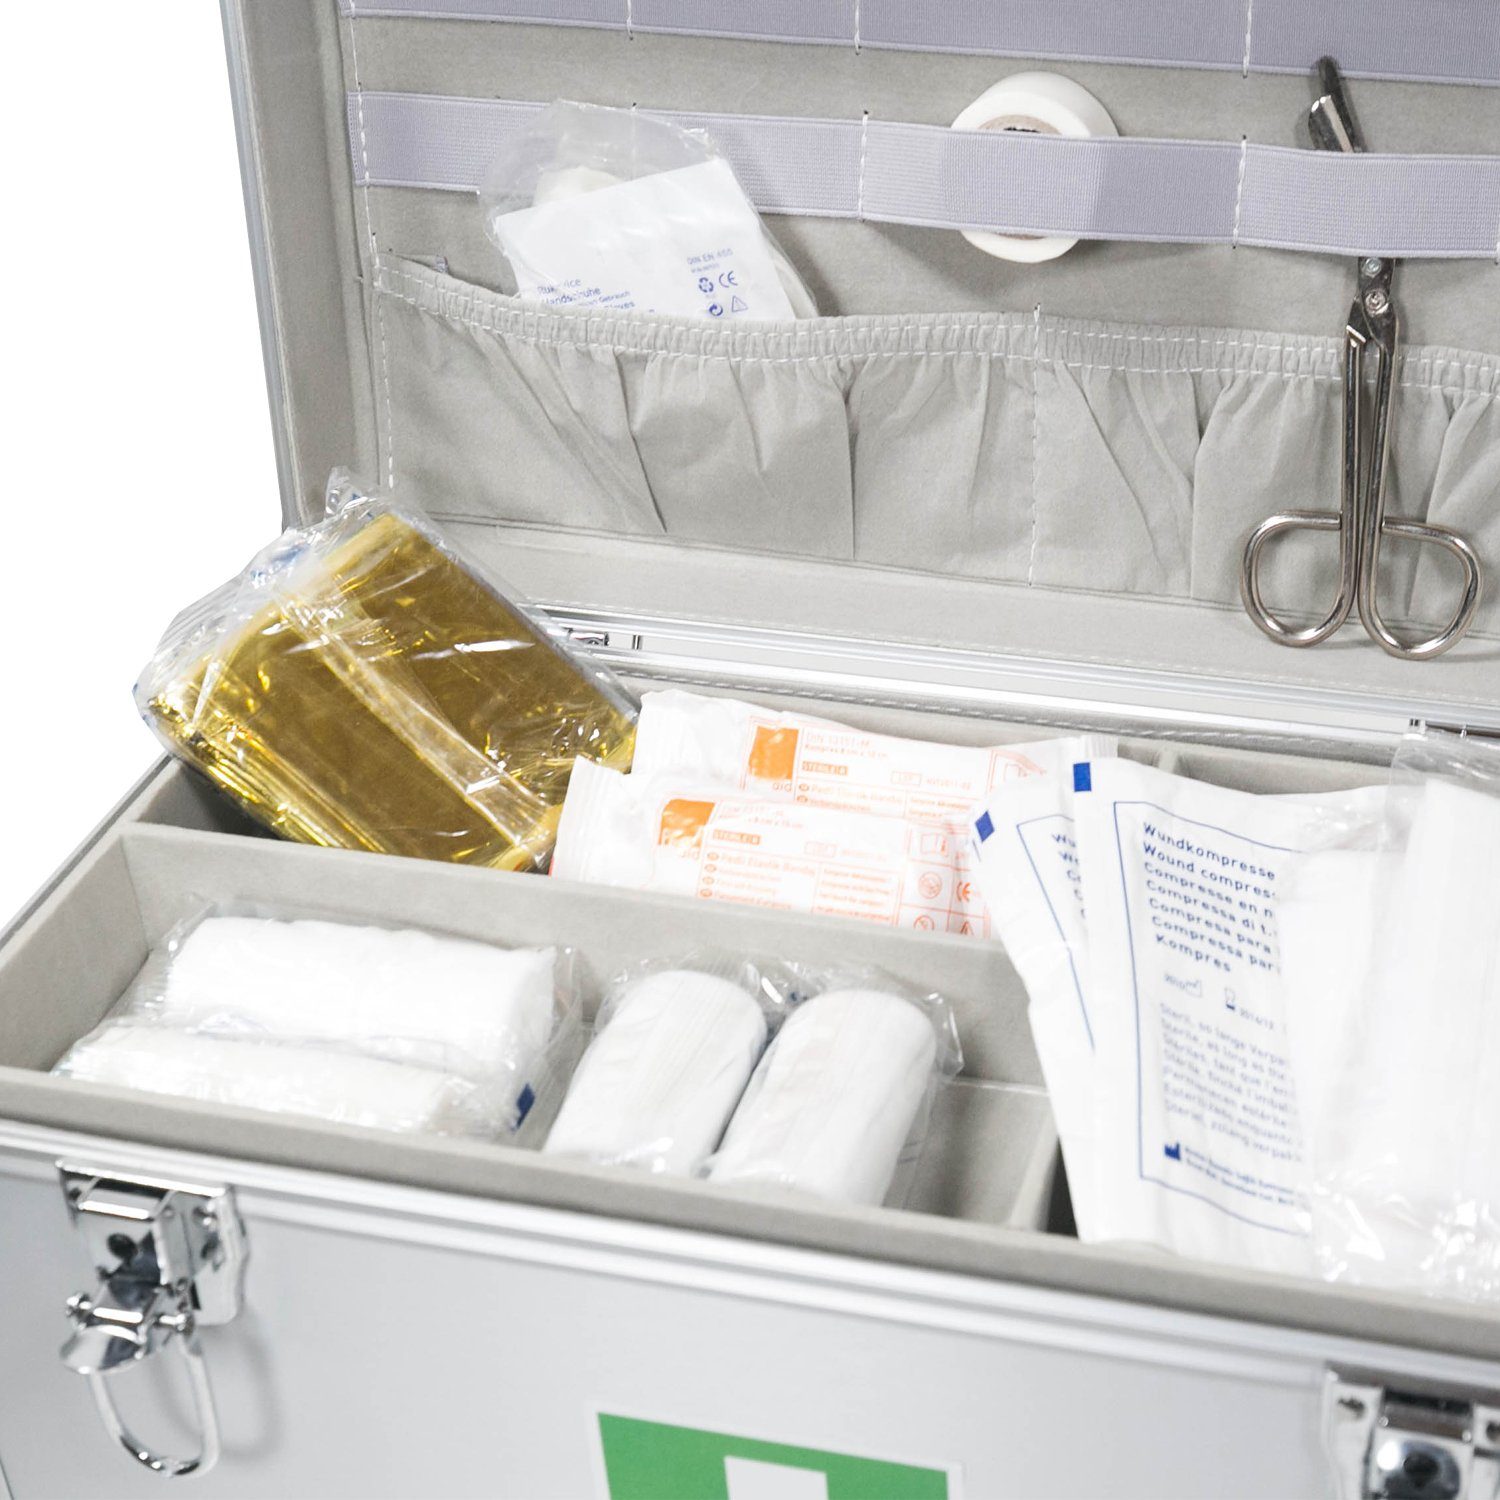 Erste-Hilfe Erstversorgung Koffer Arztkoffer für erkennbarer 40x22,5x20,5 cm HMF mit Tragegriff, Apothekerschrank Medizinkoffer,